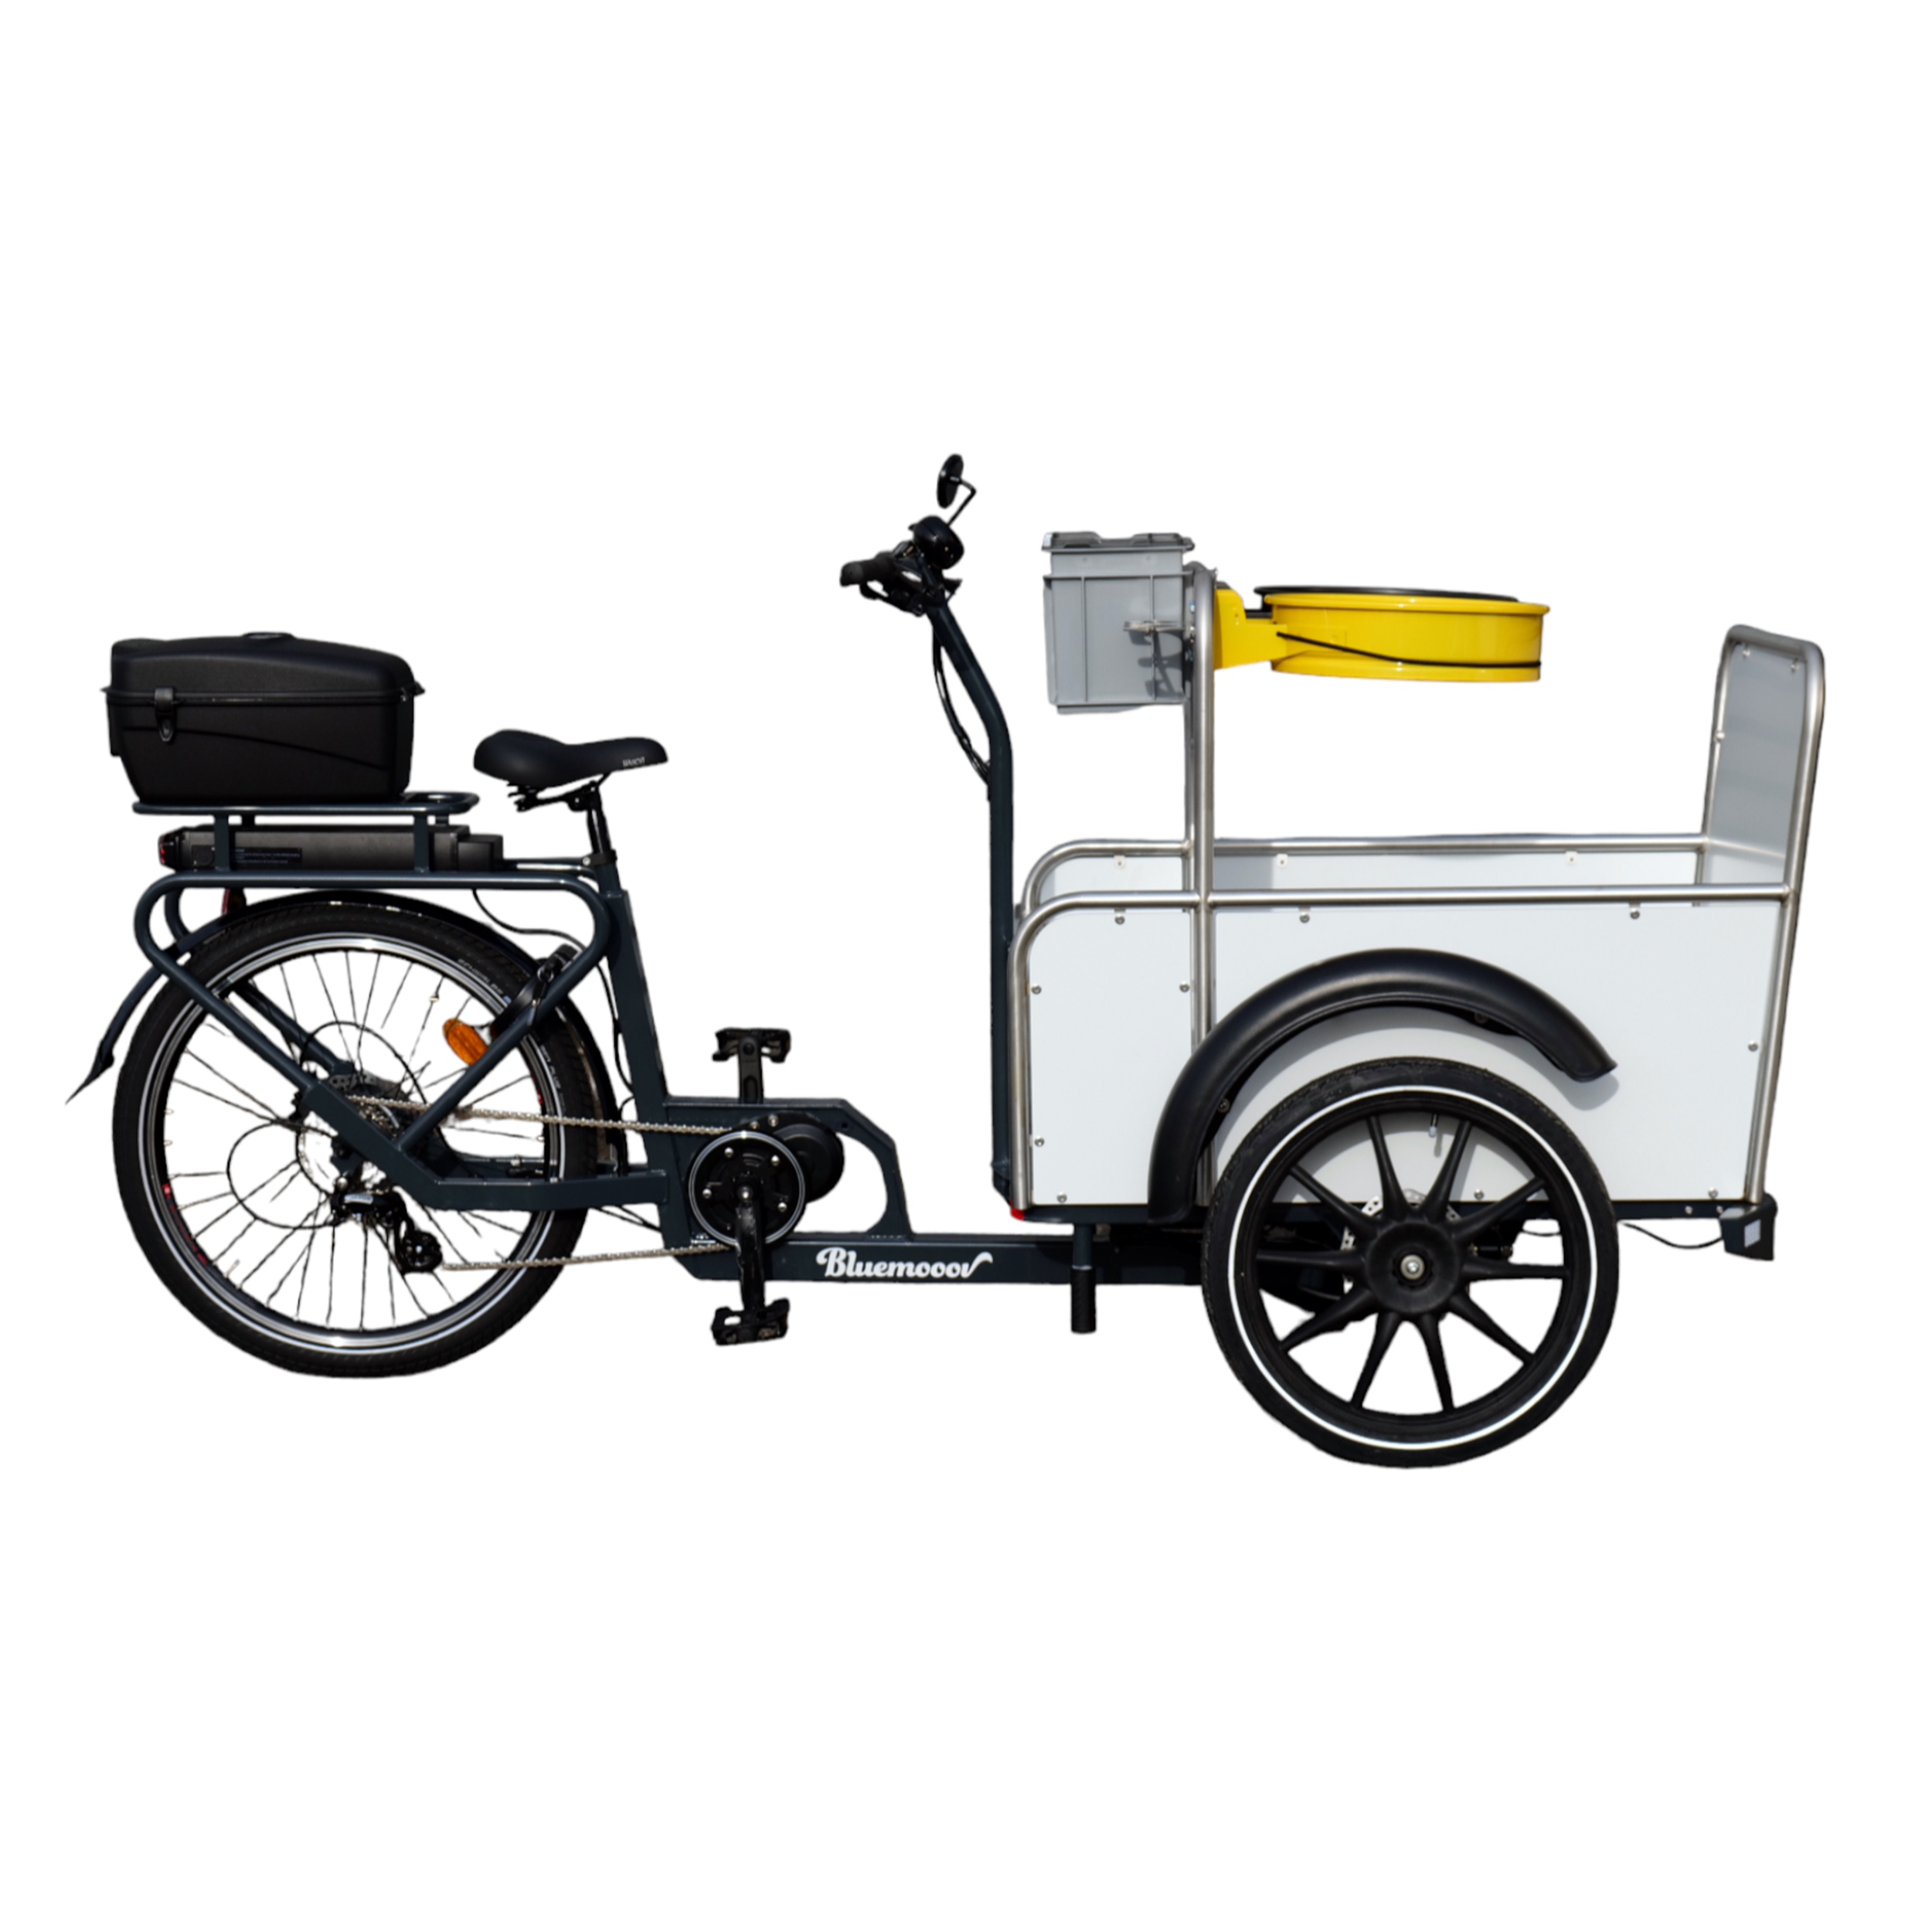 Vélo Cargo KETCH CLEEN électrique pour les clubs et collectivités